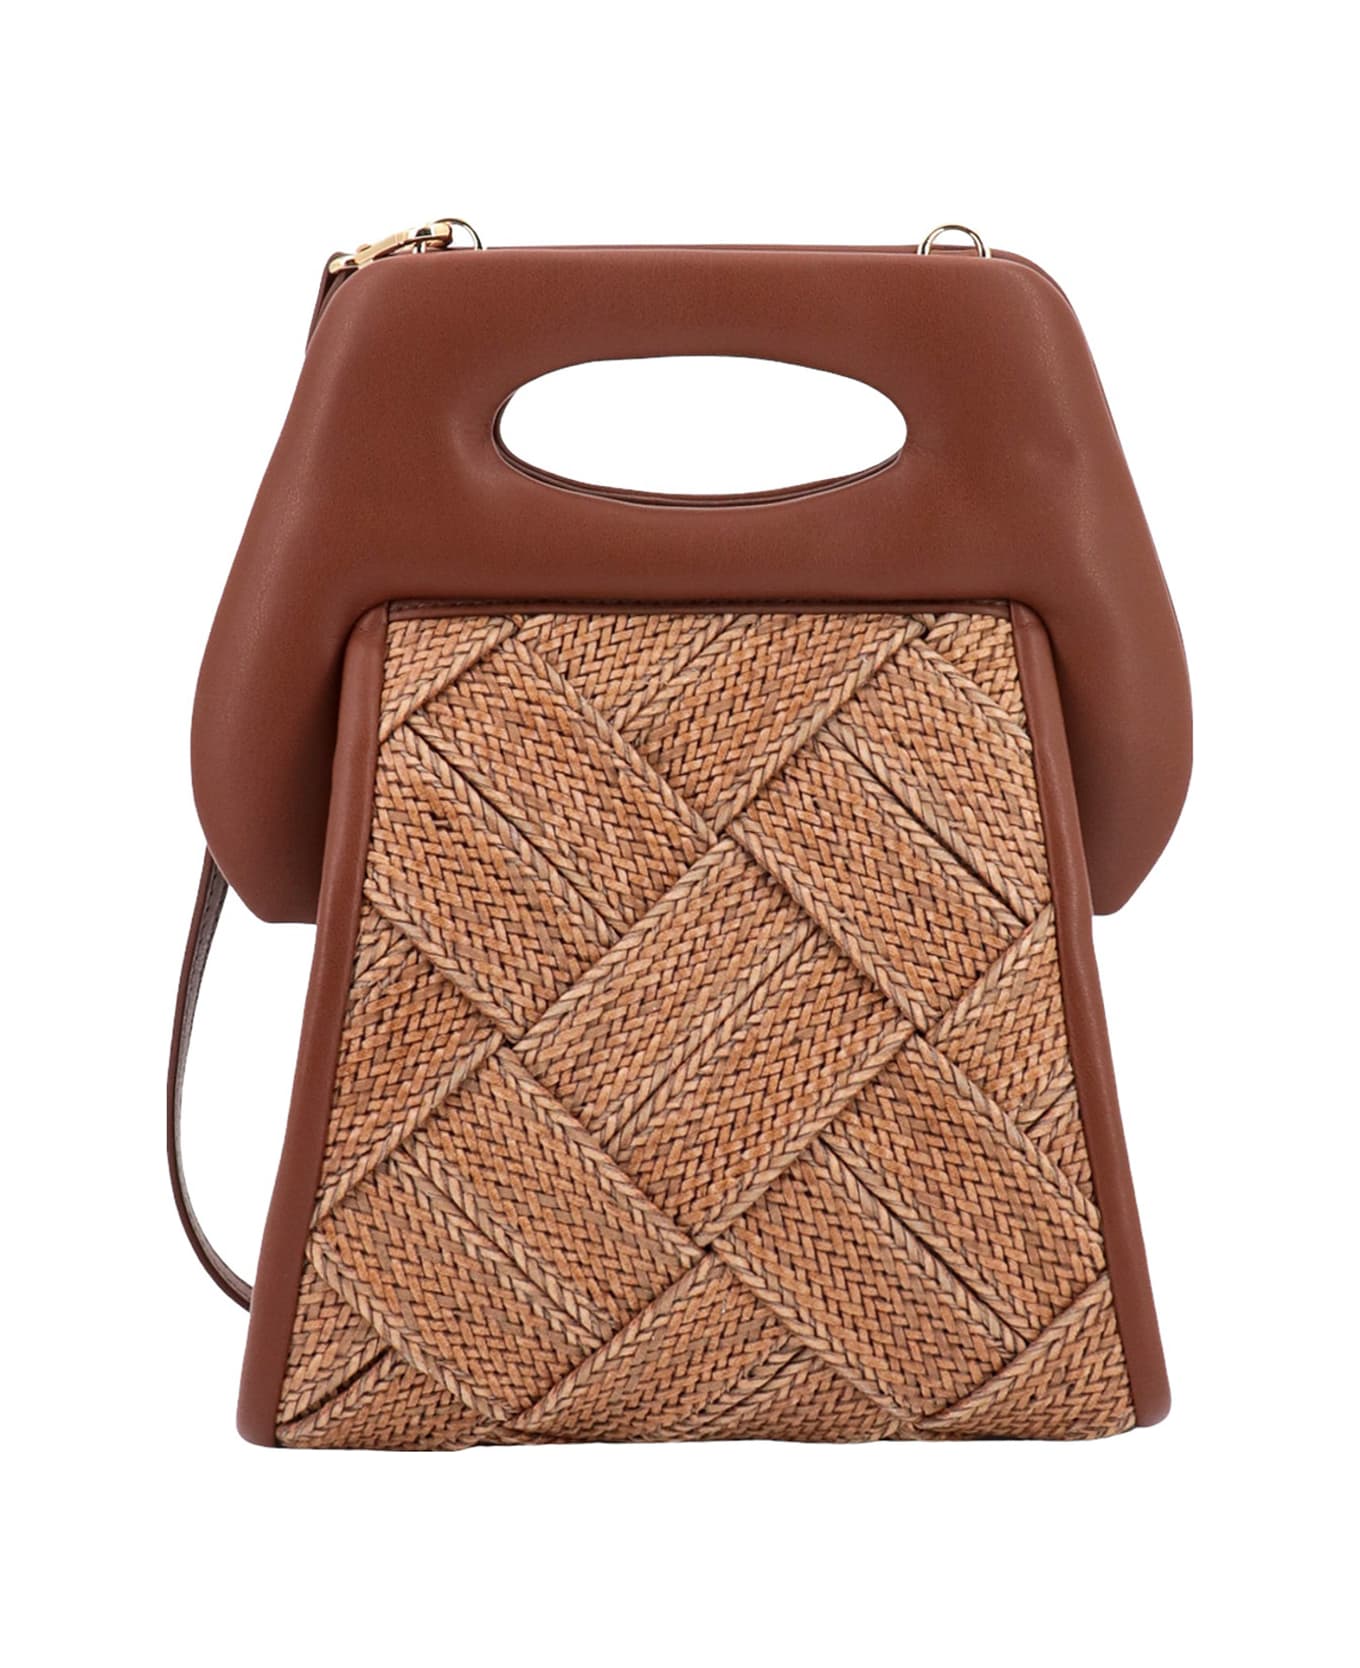 THEMOIRè Clori Handbag - Brown